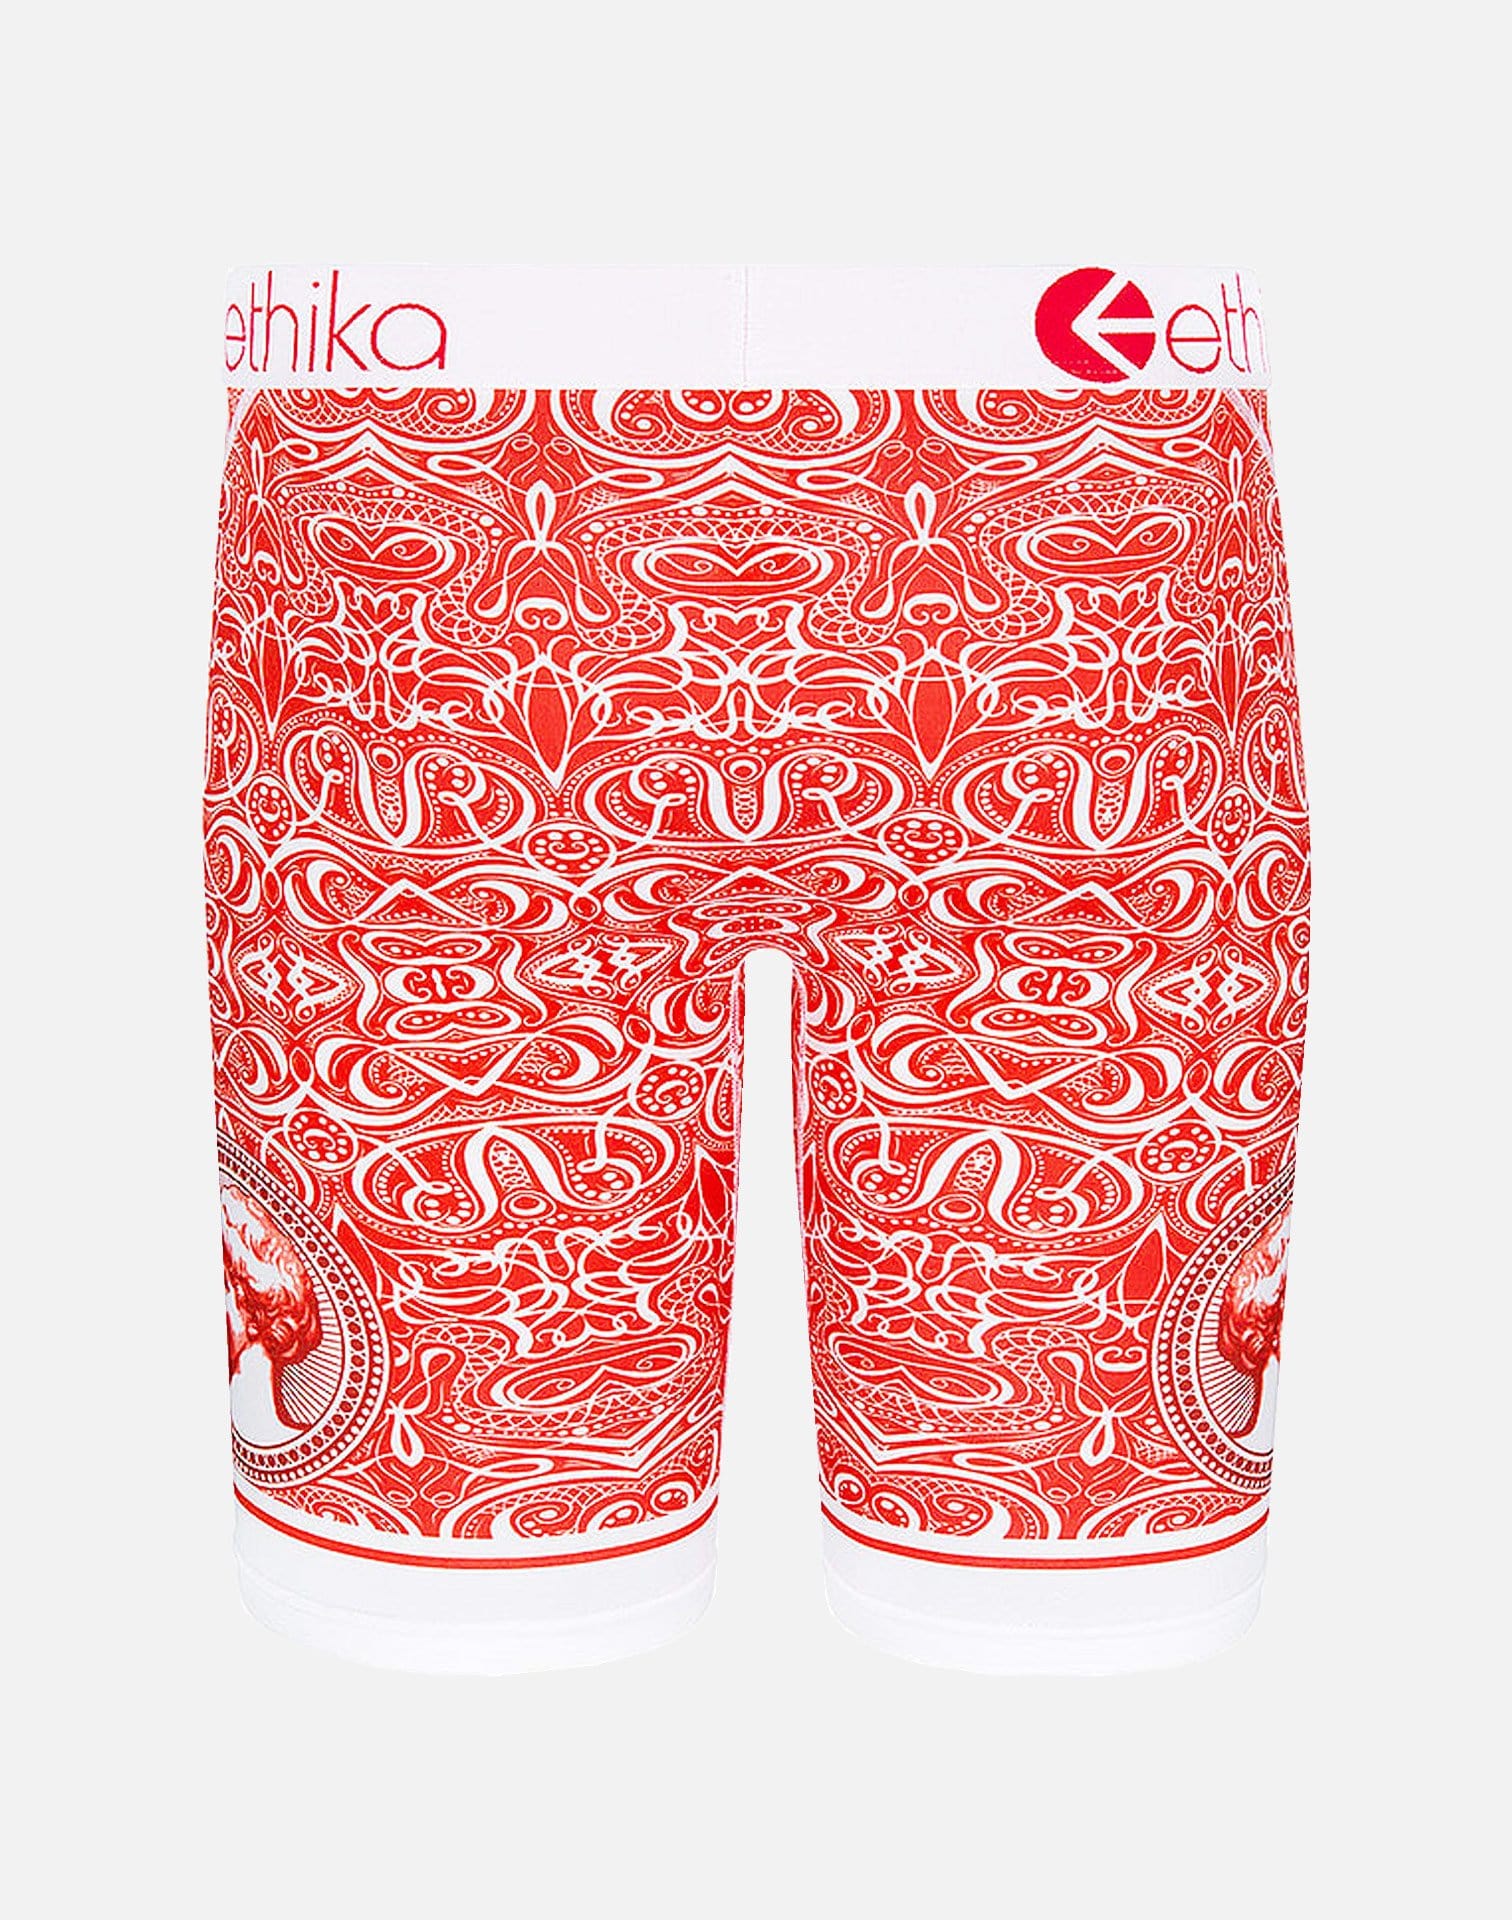 Ethika All In Speckles Boxer Brief Underwear (Red/White)